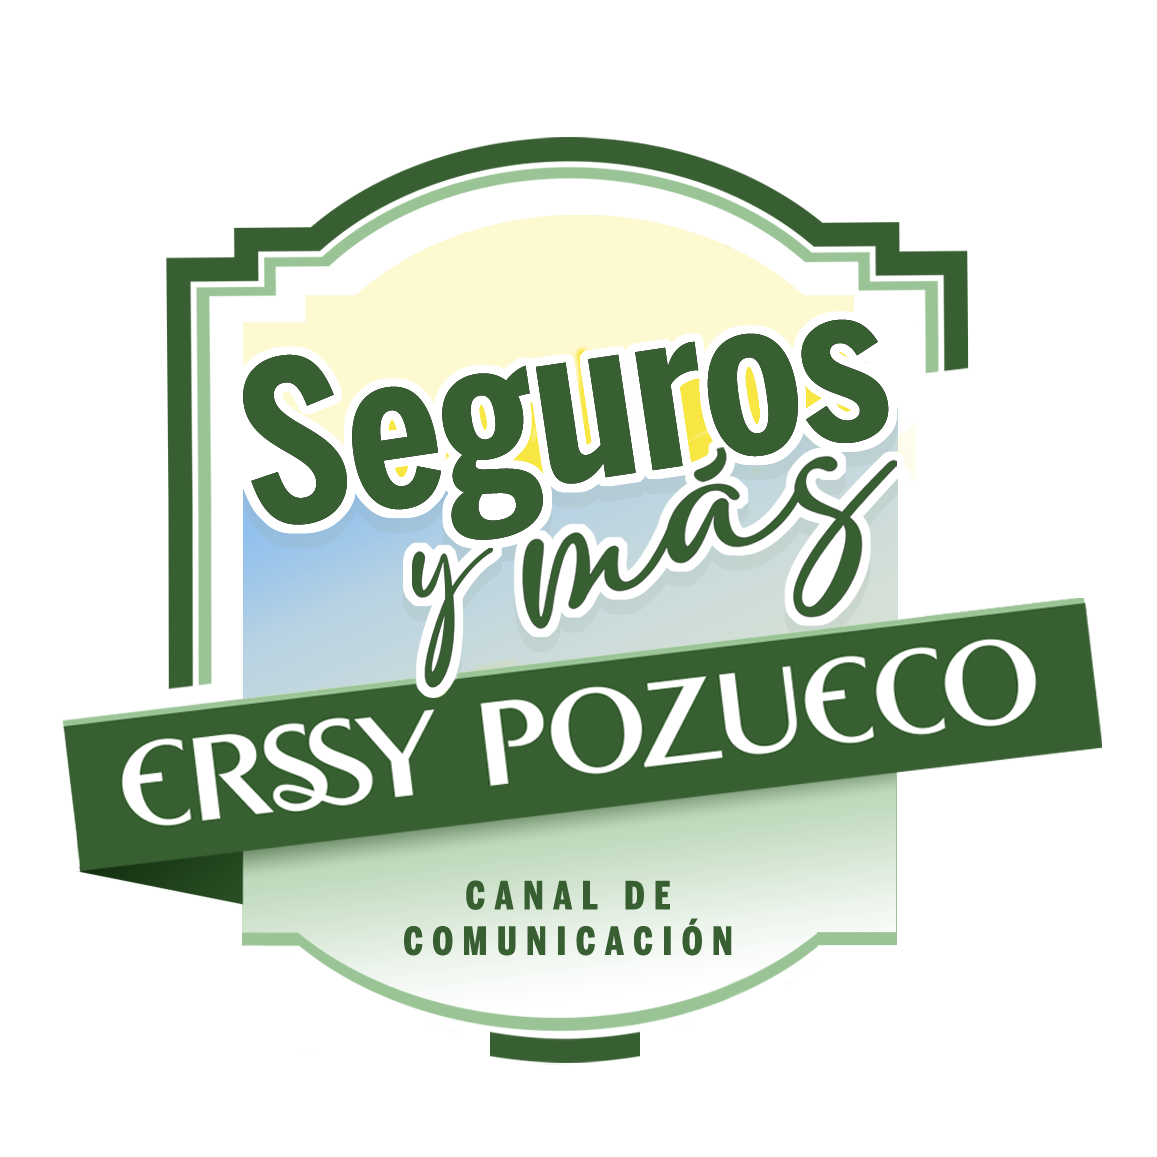 Erssy Pozueco - Correduría de seguros, Asesoría financiera, Gestión de Riesgos, Consultoría Financiera e Inmobiliaria en Asturias